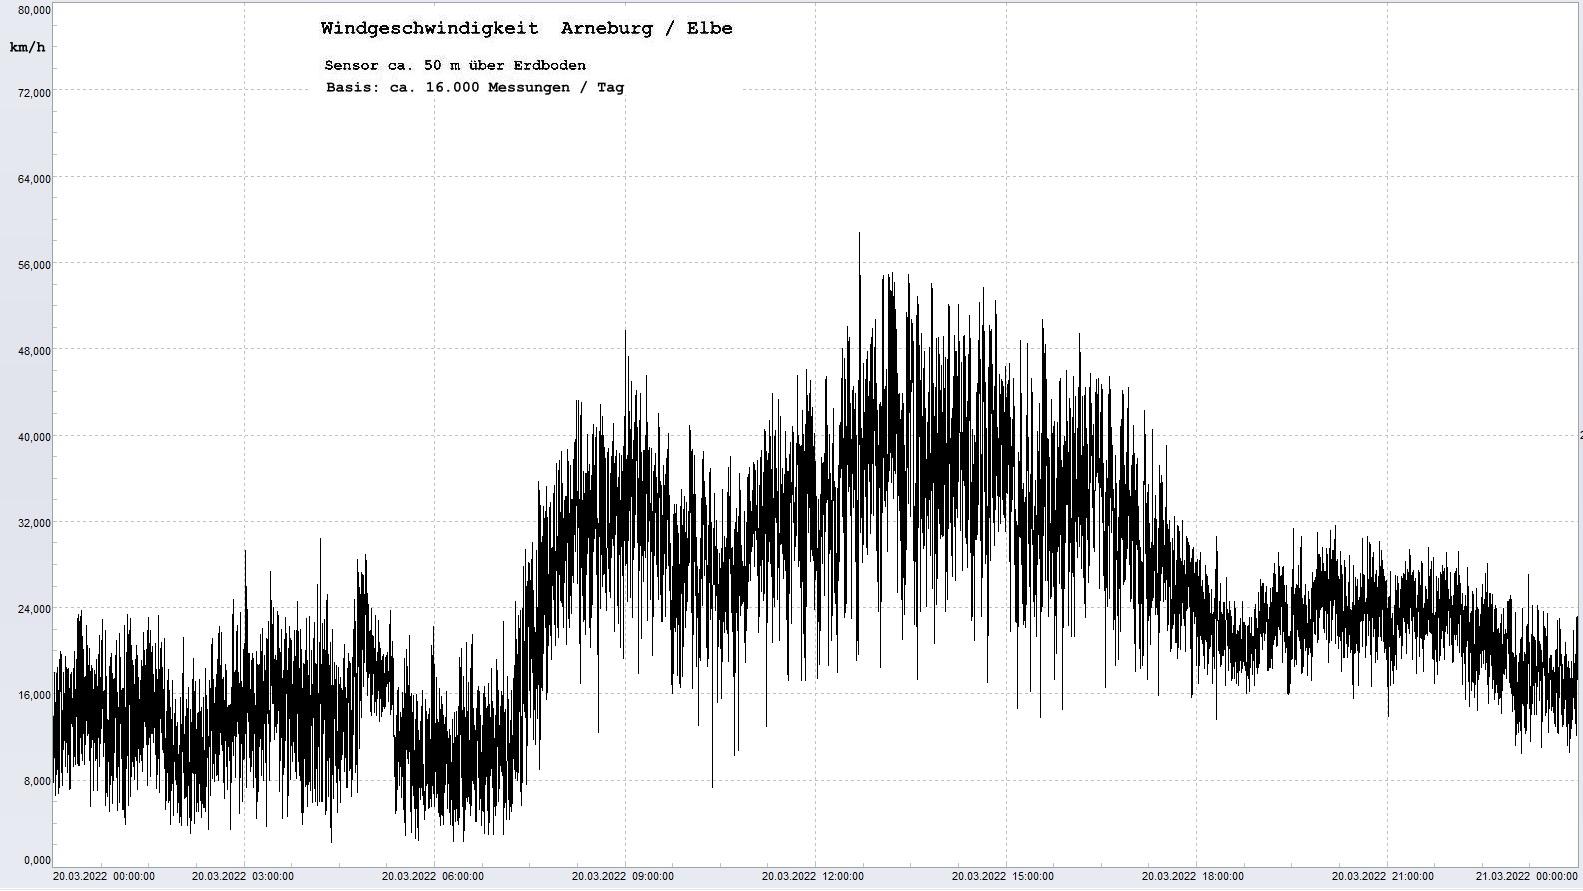 Arneburg Tages-Diagramm Winddaten, 20.03.2022
  Diaramm, Sensor auf Gebude, ca. 50 m ber Erdboden, Basis: 5s-Aufzeichnung